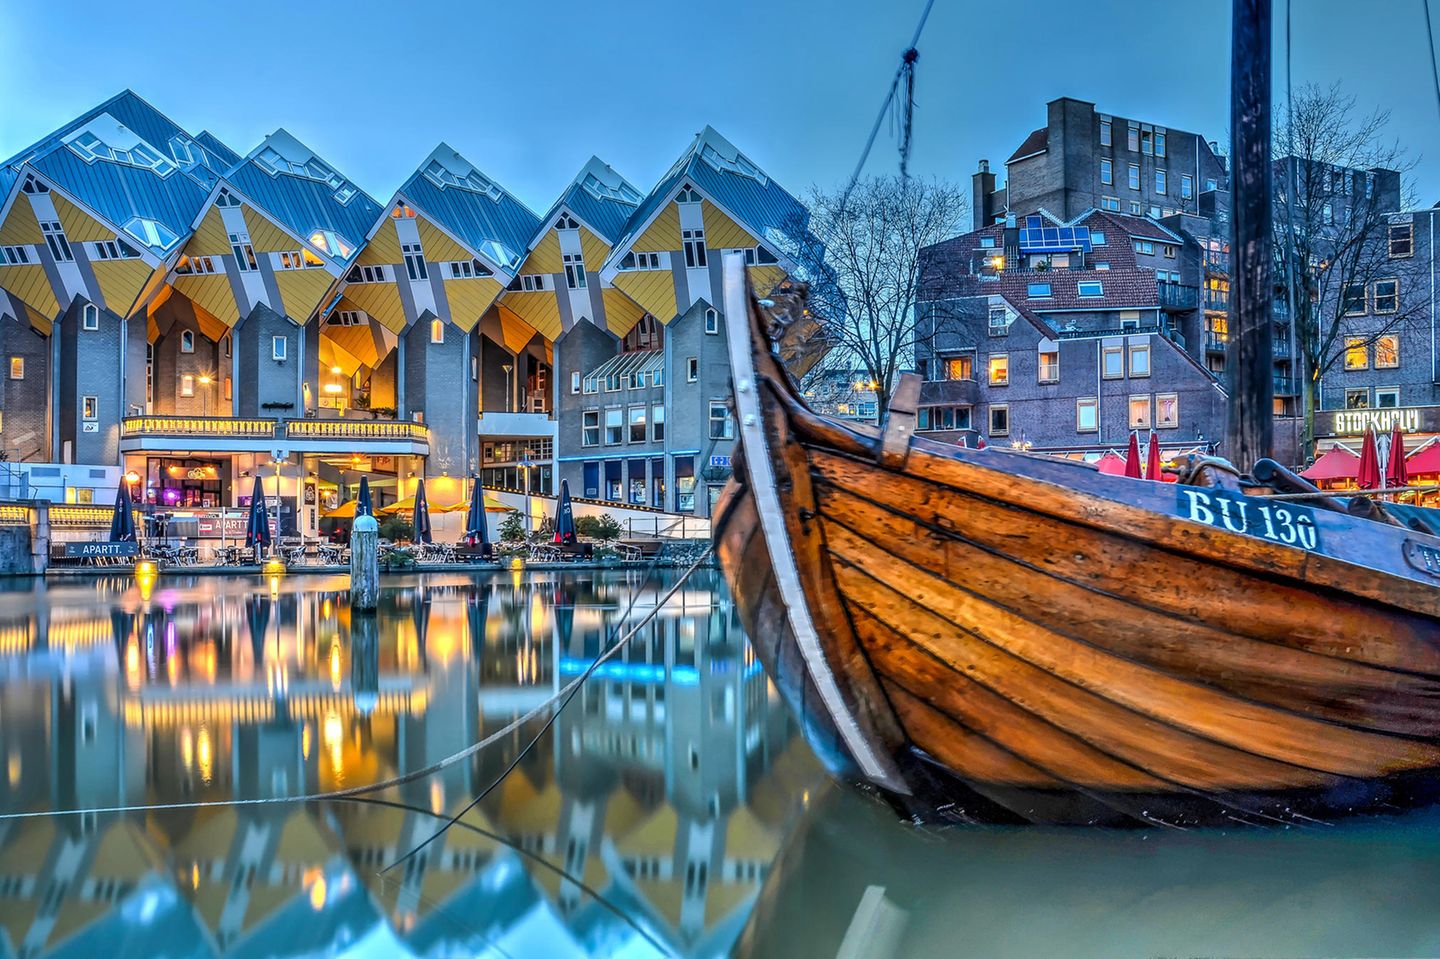 Alten Schiff im Hafen von Rotterdam vor den Cube-Häusern